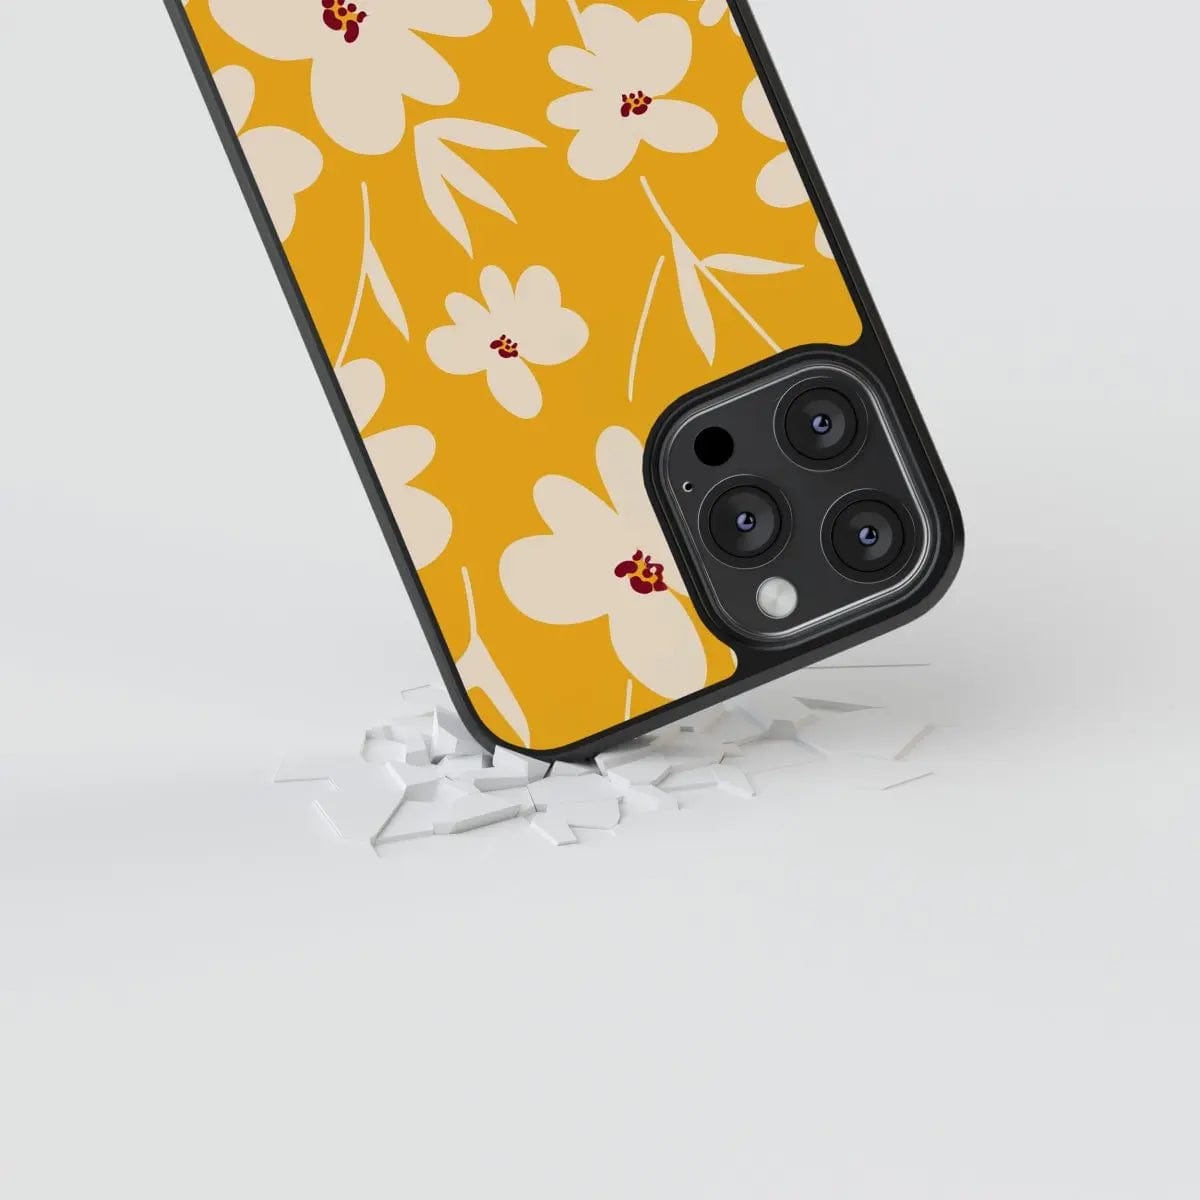 Phone case "Milk flower" - Artcase